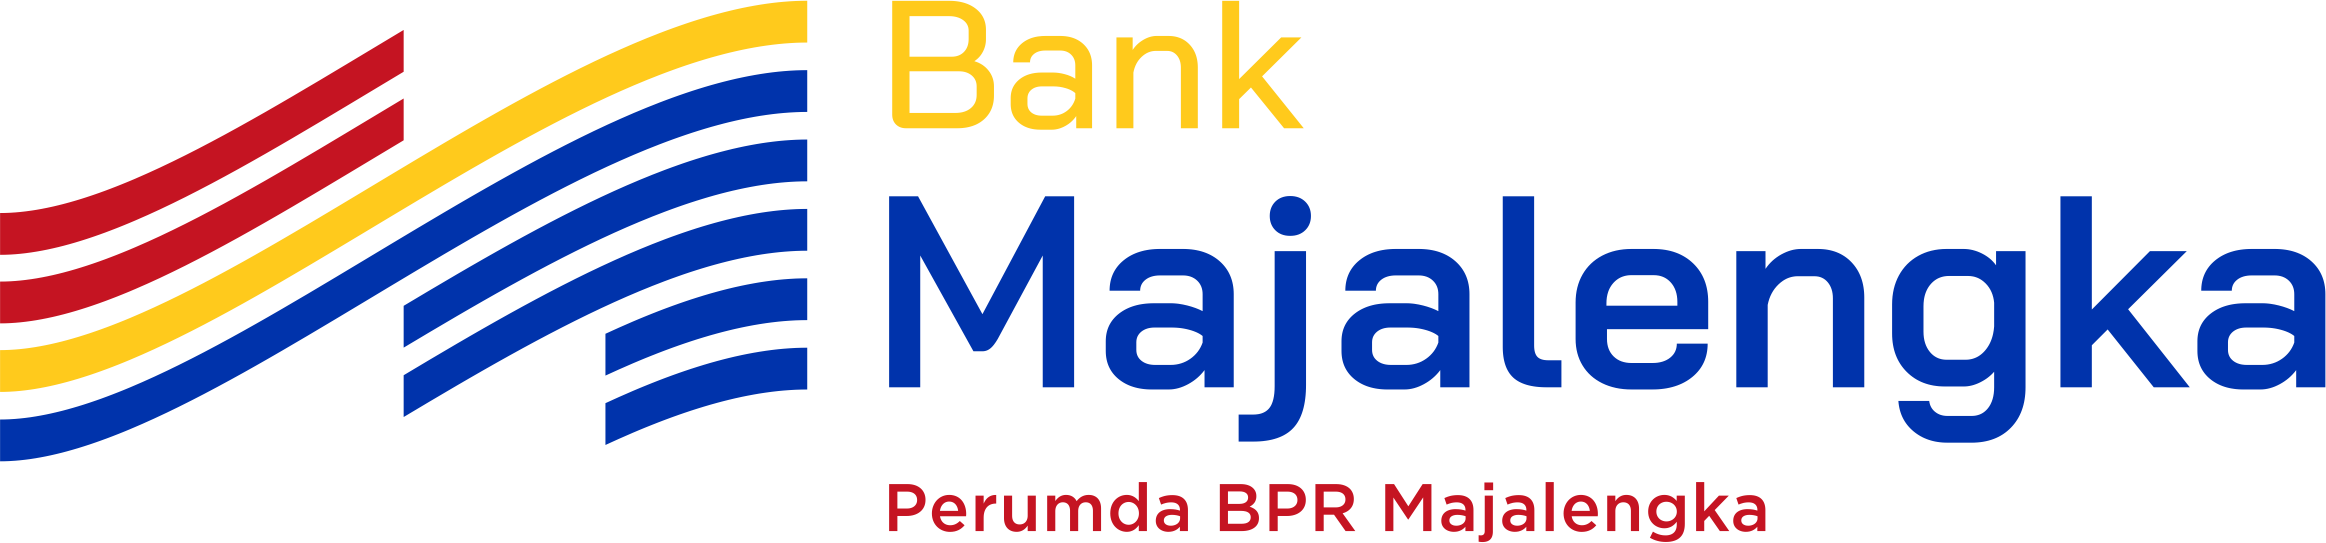 logo-bank-majalengka.png